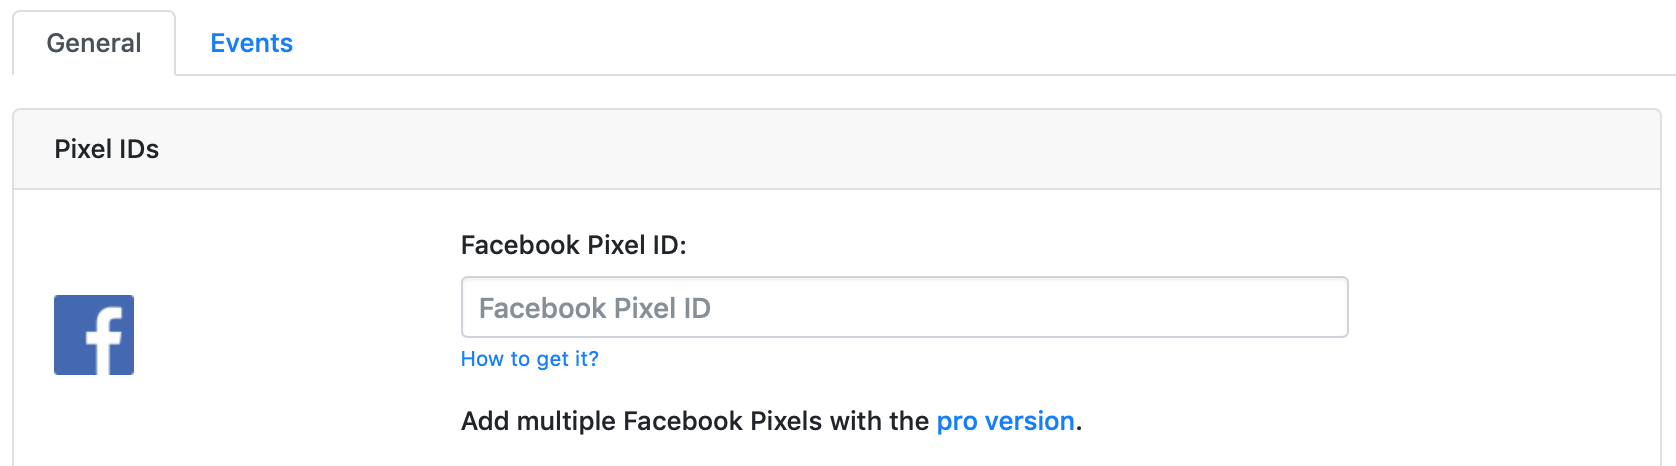 Facebook Pixel ID for WordPress